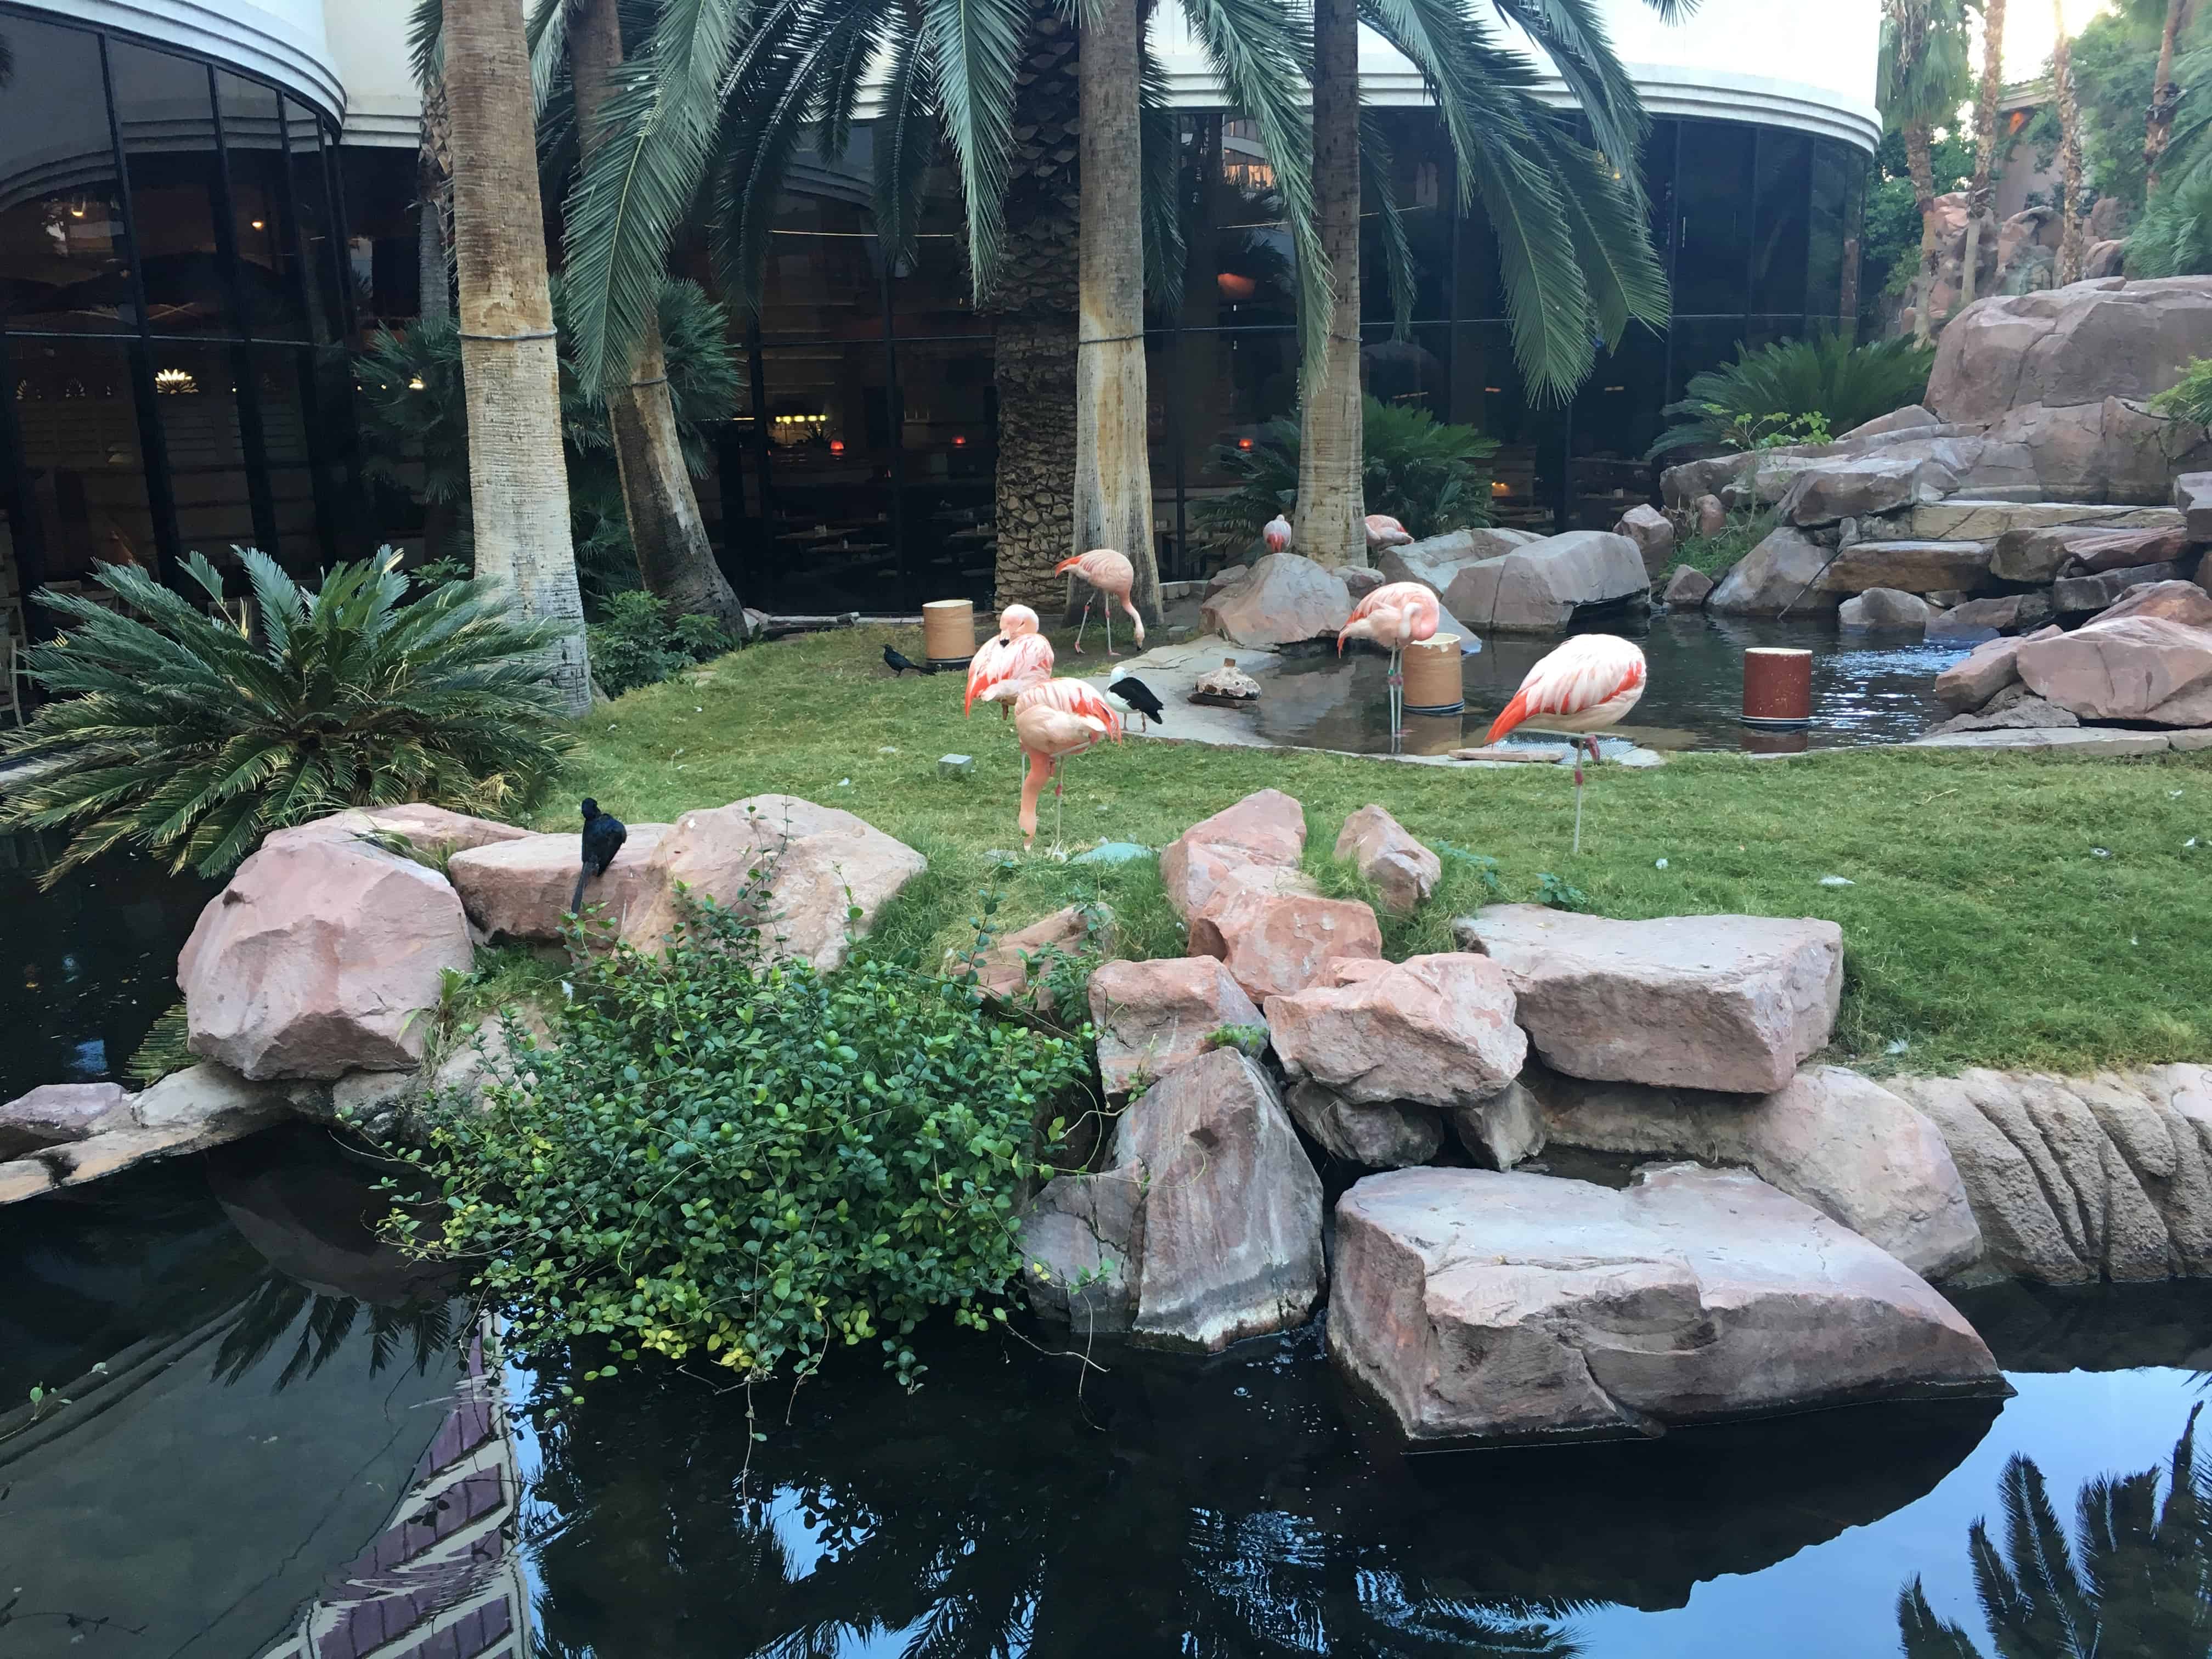 Wildlife habitat at The Flamingo in Las Vegas, Nevada